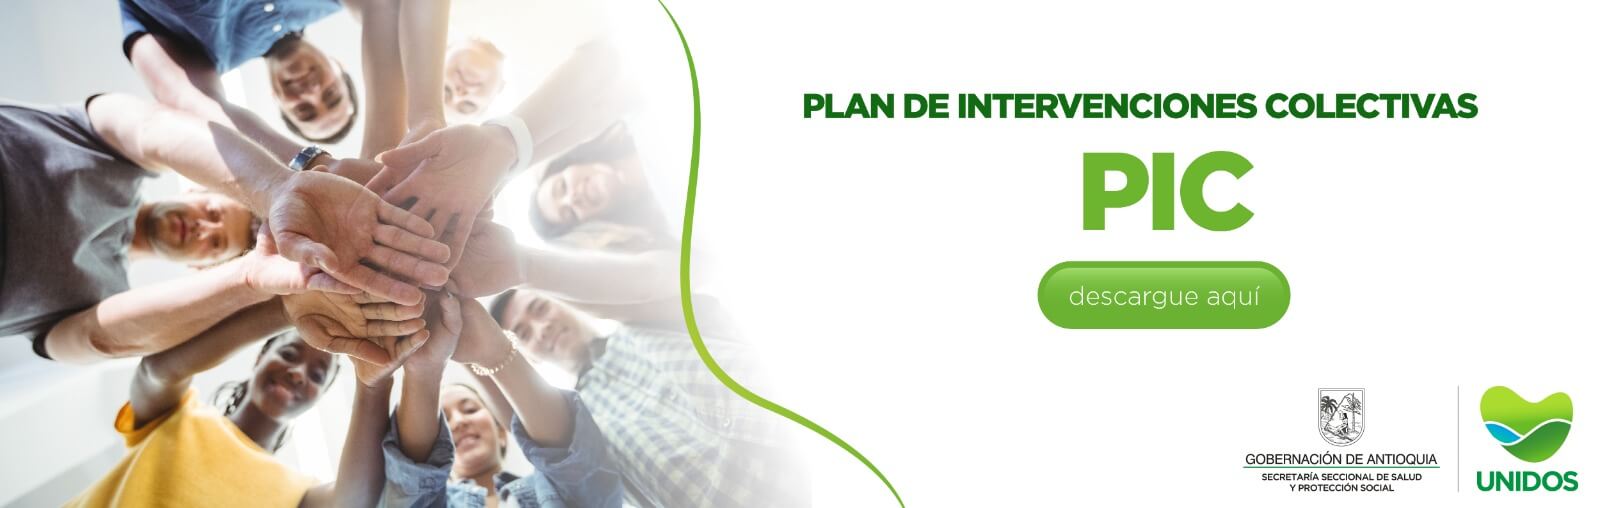 Plan de Intervenciones Colectivas-PIC Plan de Intervenciones Colectivas-PIC